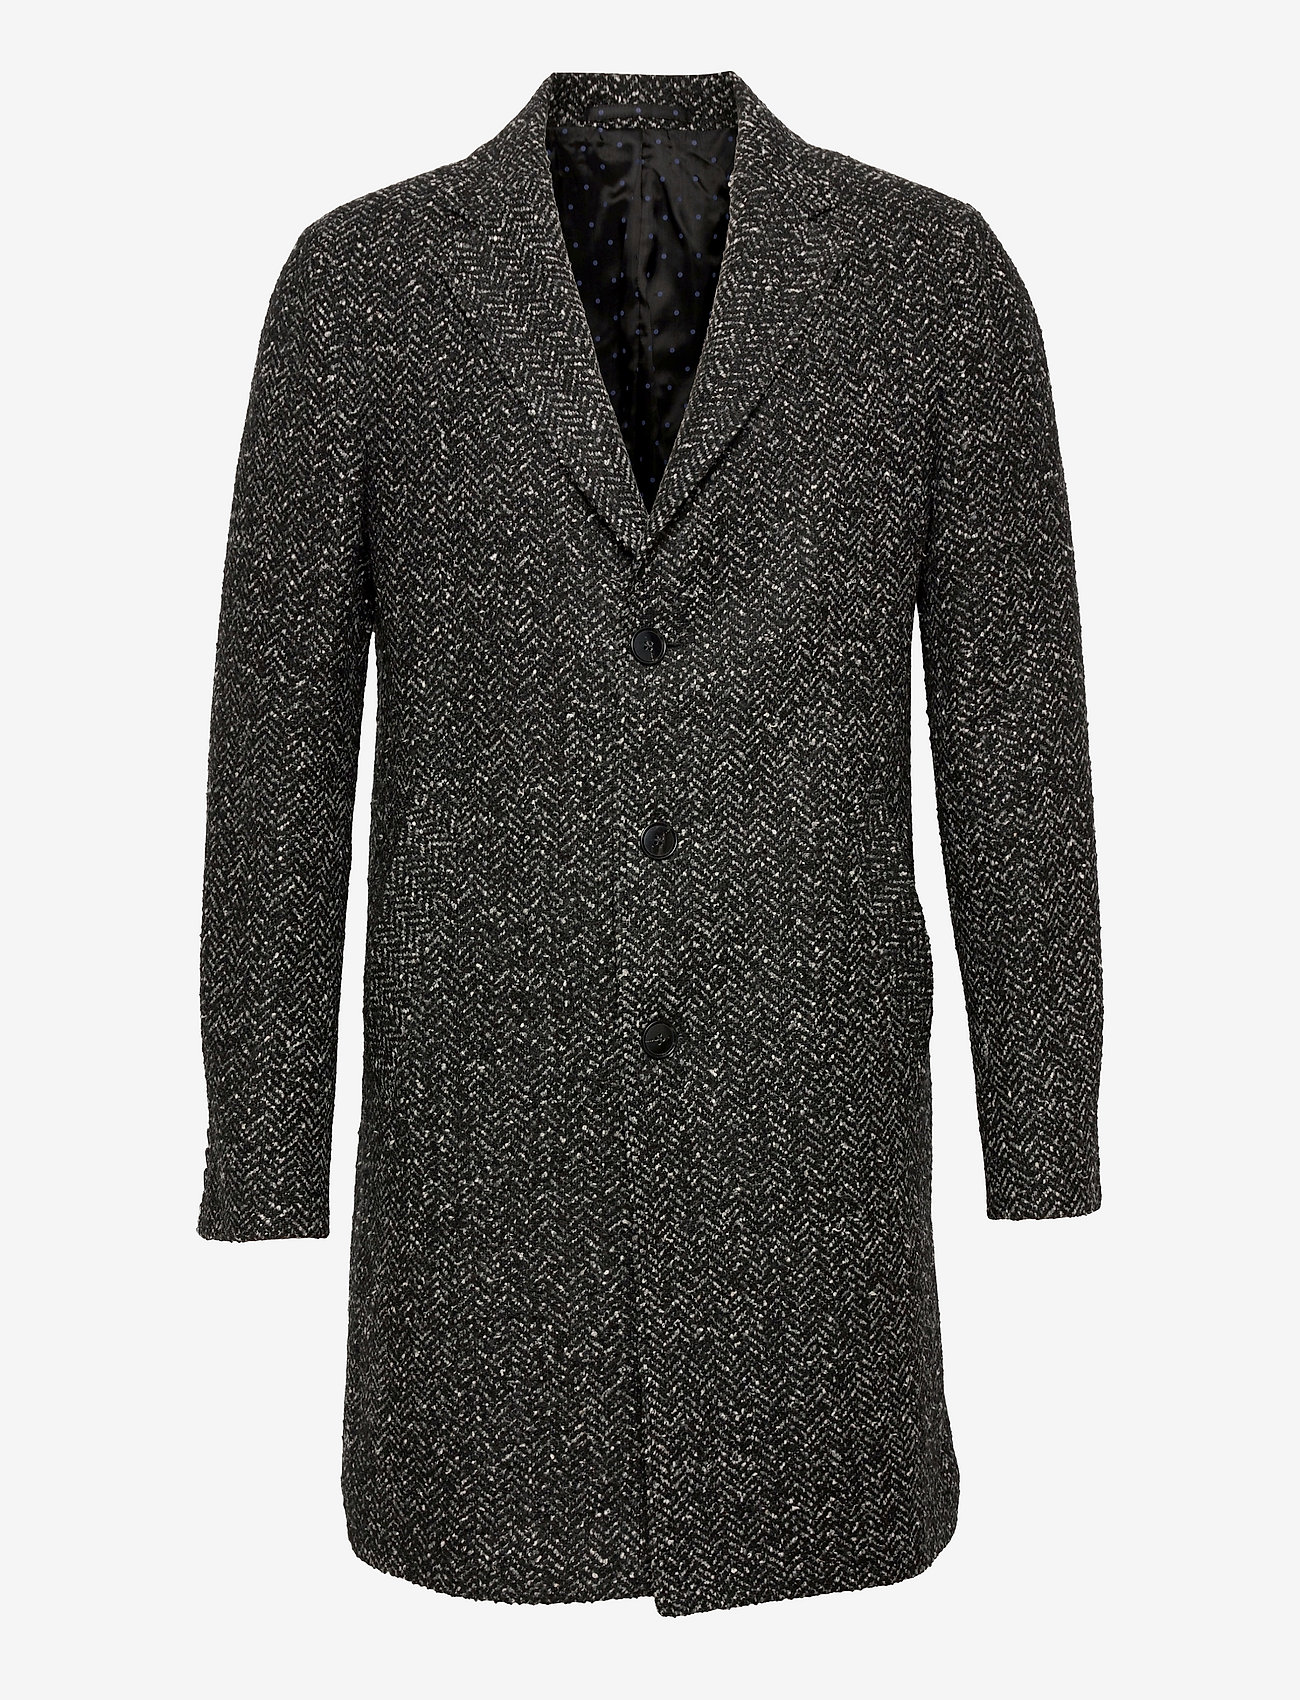 SAND - 7419 - Retro Coat - manteaux d'hiver - black - 0